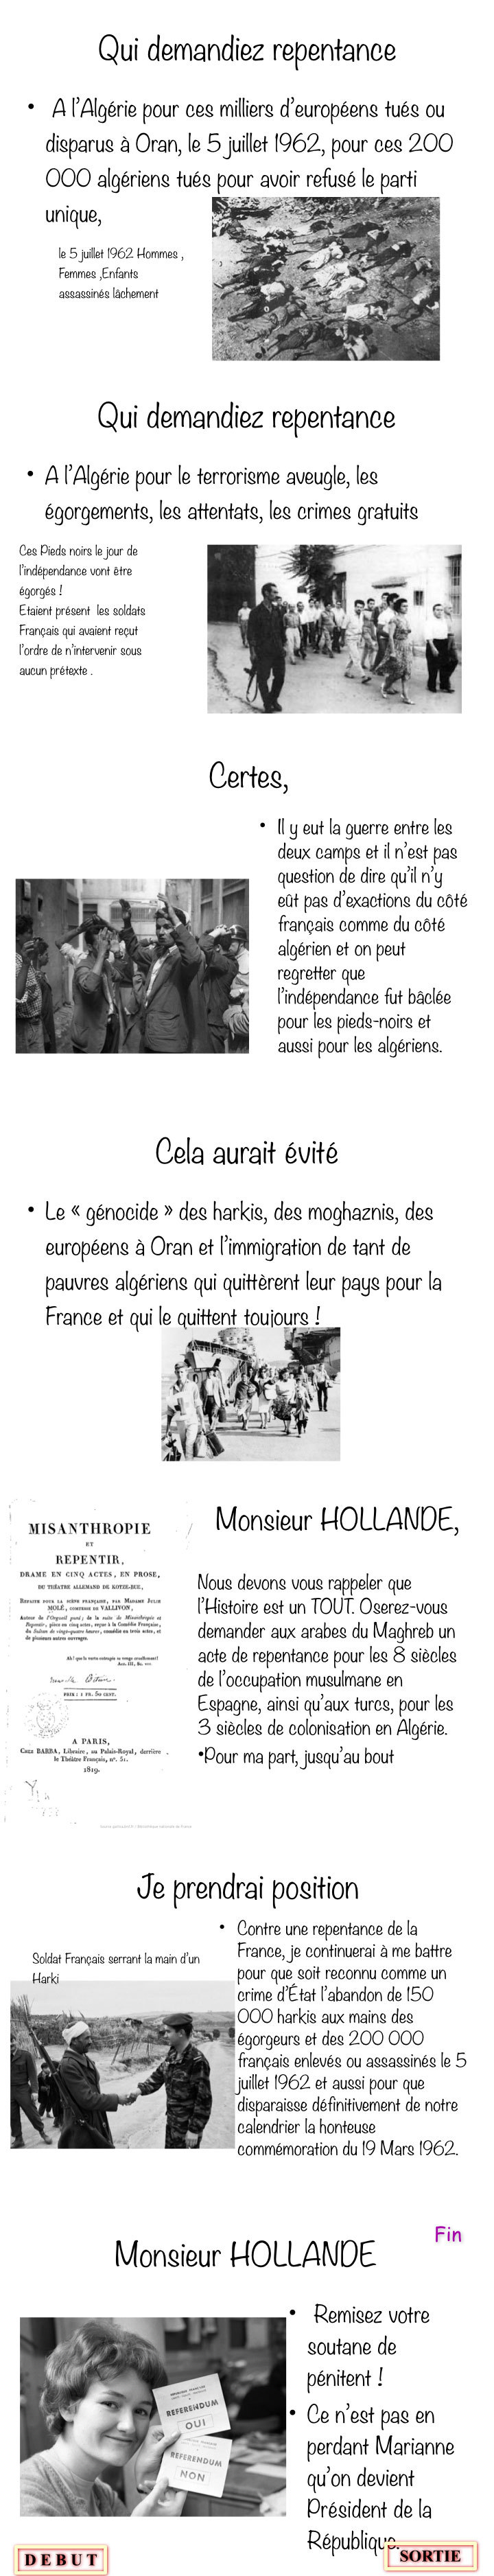 La repentance de Hollande